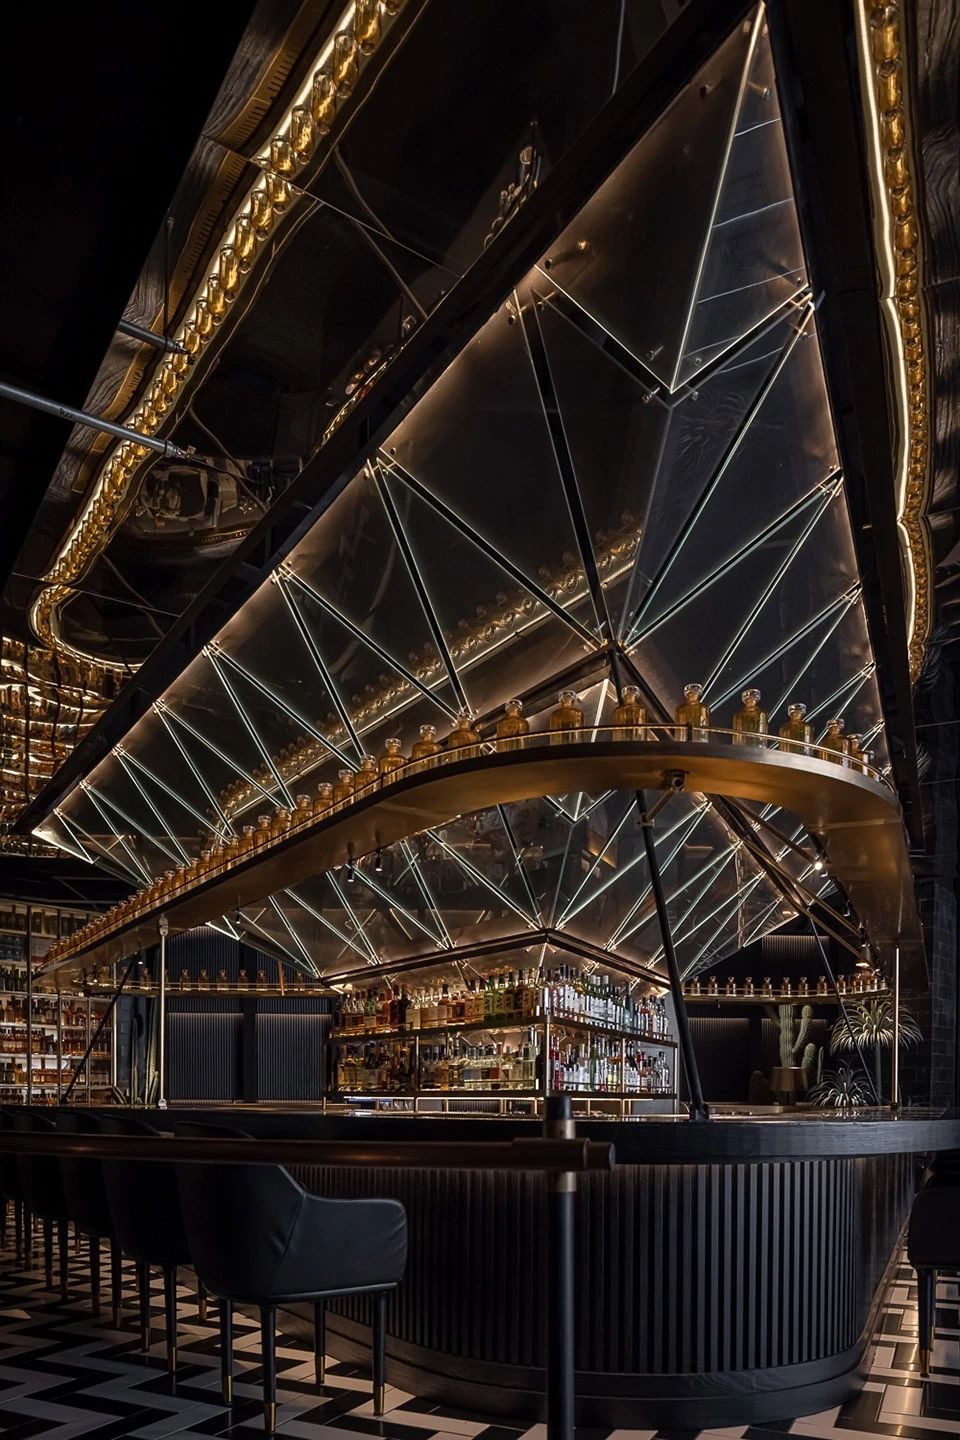 随州灯光设计拍摄案例 | PLUTO BAR酒吧室内设计,吧台酒架用金属管搭配线灯做氛围光天花采用轨道射灯,工业风酒吧